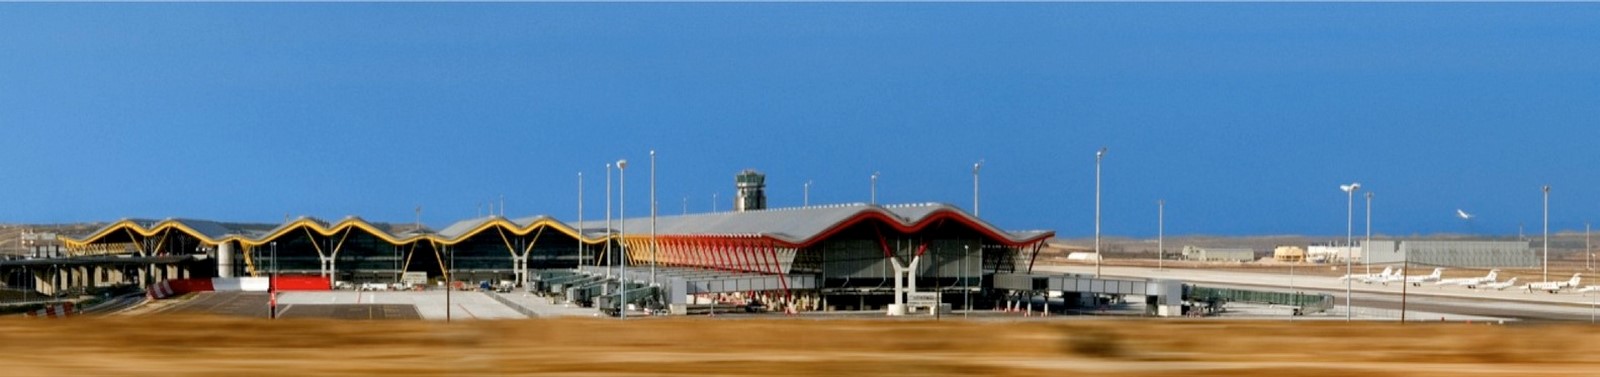 10 Des conceptions d'aéroport inspirantes dans le monde entier - Feuille10 